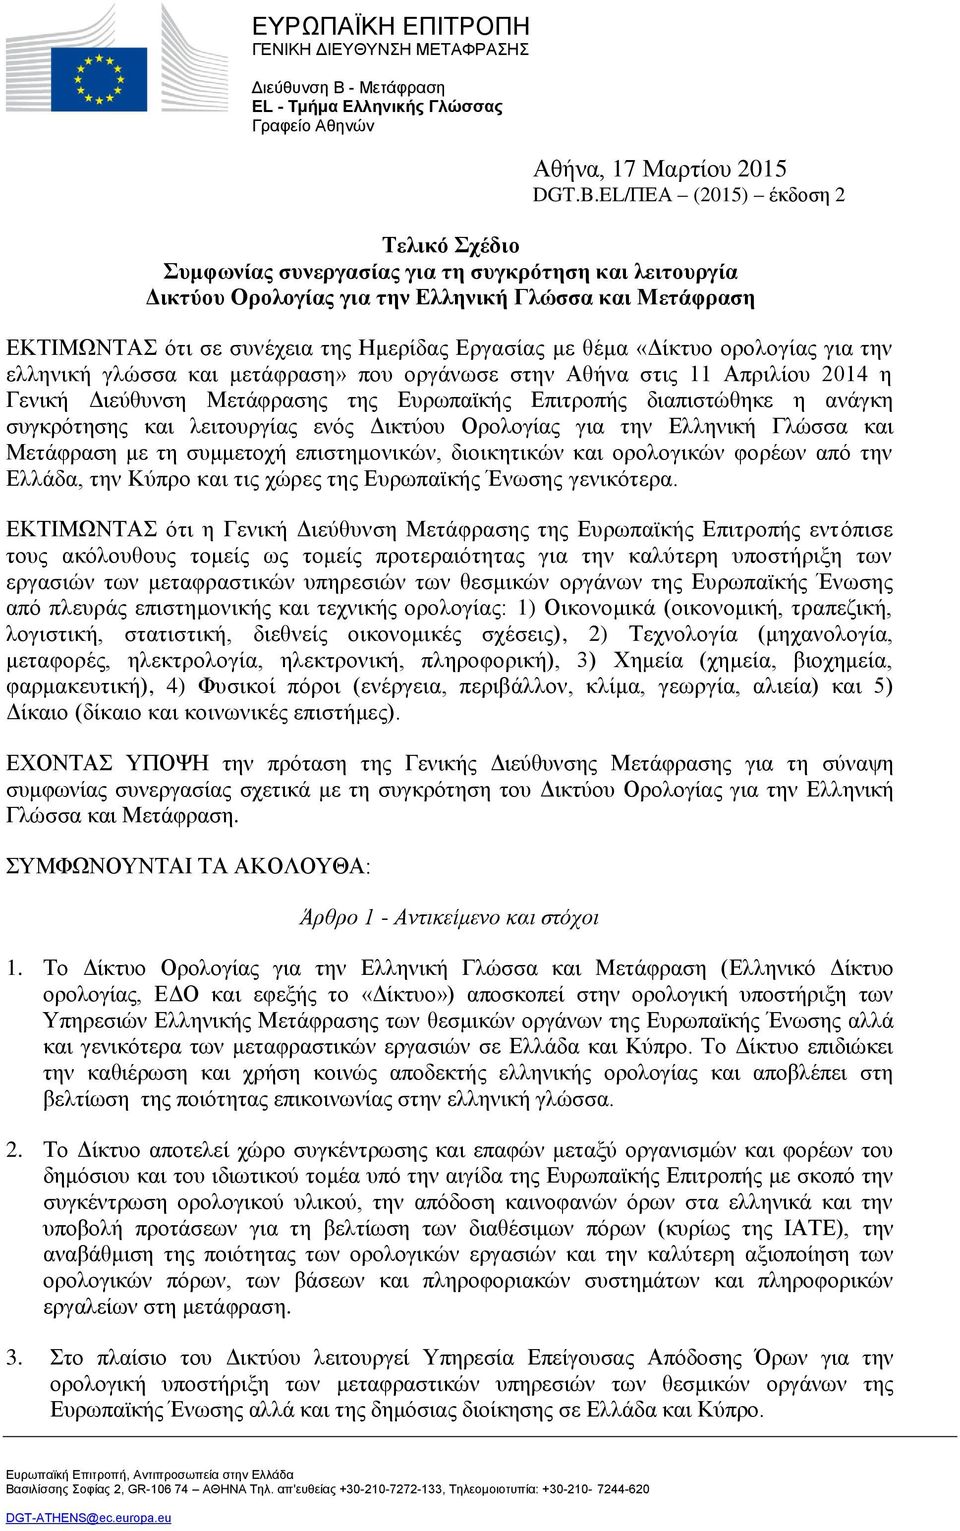 θέμα «Δίκτυο ορολογίας για την ελληνική γλώσσα και μετάφραση» που οργάνωσε στην Αθήνα στις 11 Απριλίου 2014 η Γενική Διεύθυνση Μετάφρασης της Ευρωπαϊκής Επιτροπής διαπιστώθηκε η ανάγκη συγκρότησης